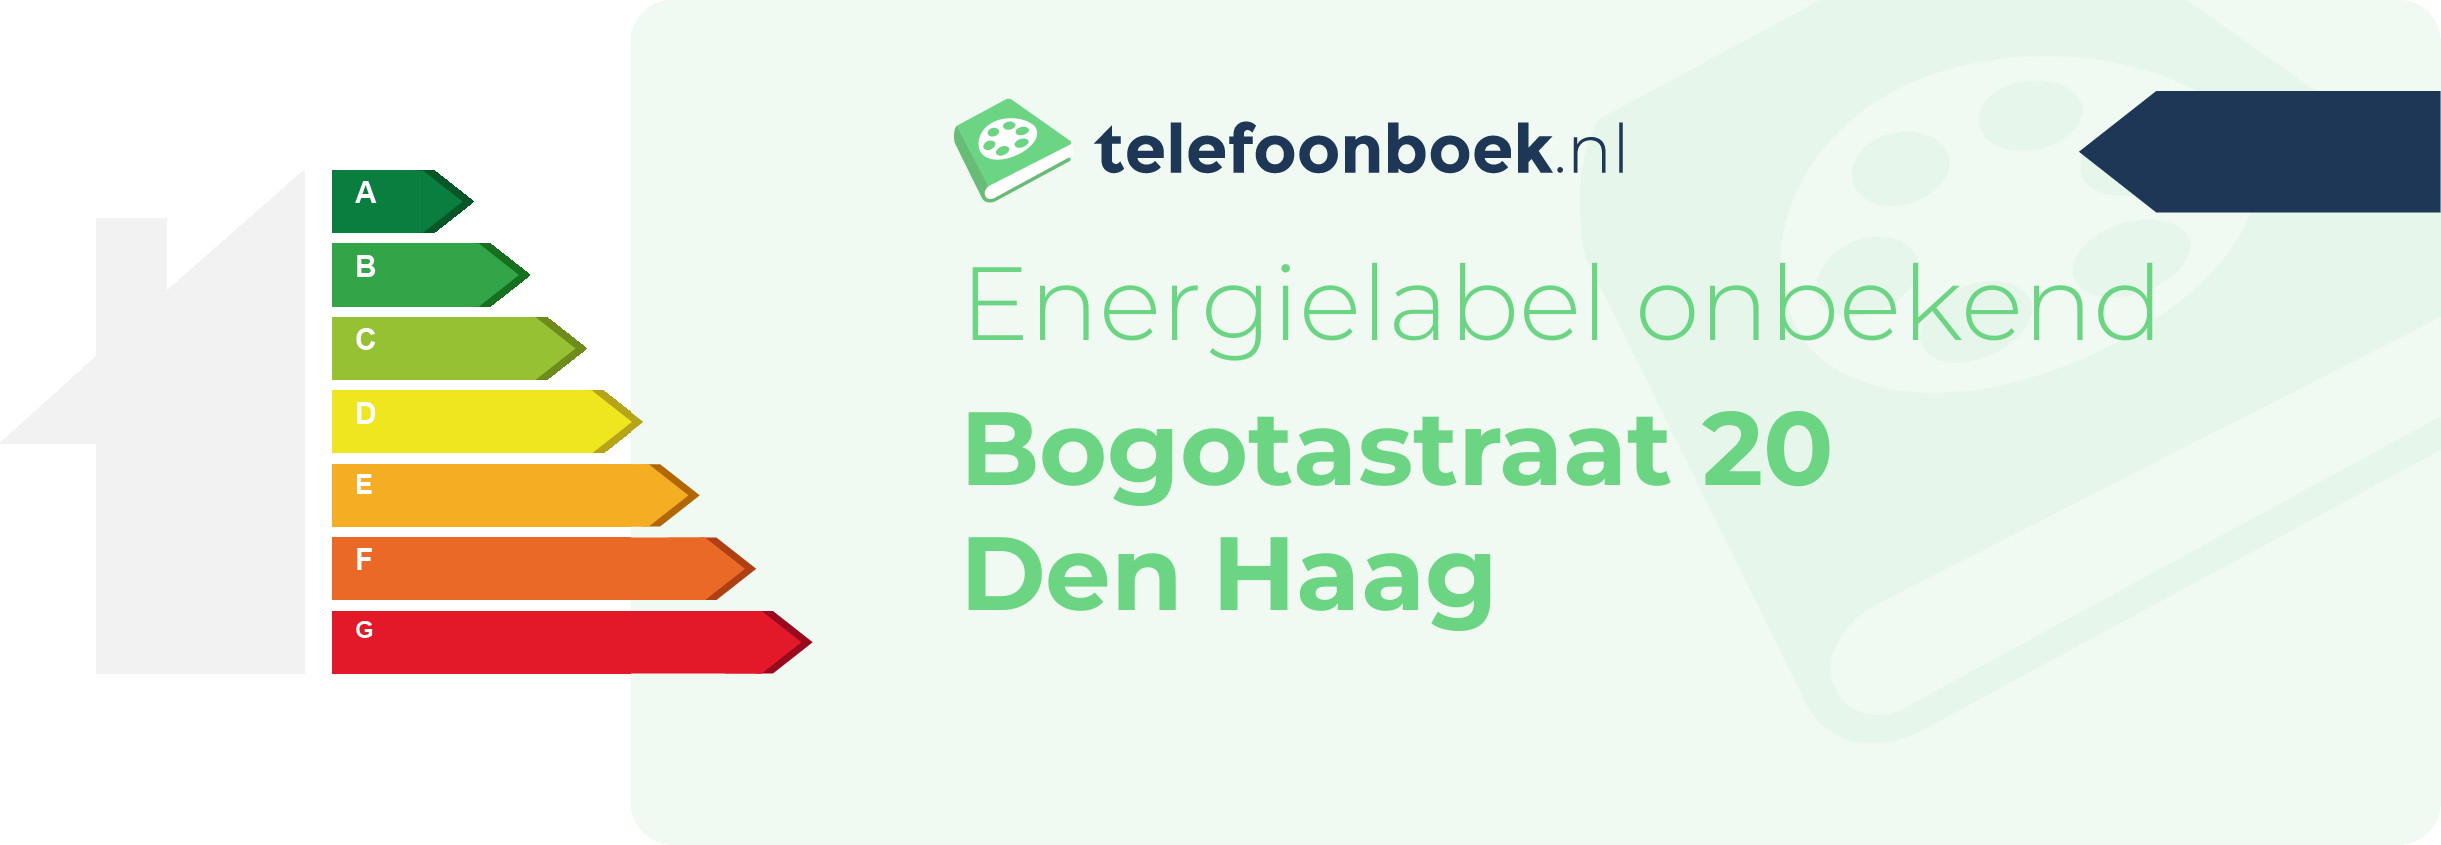 Energielabel Bogotastraat 20 Den Haag